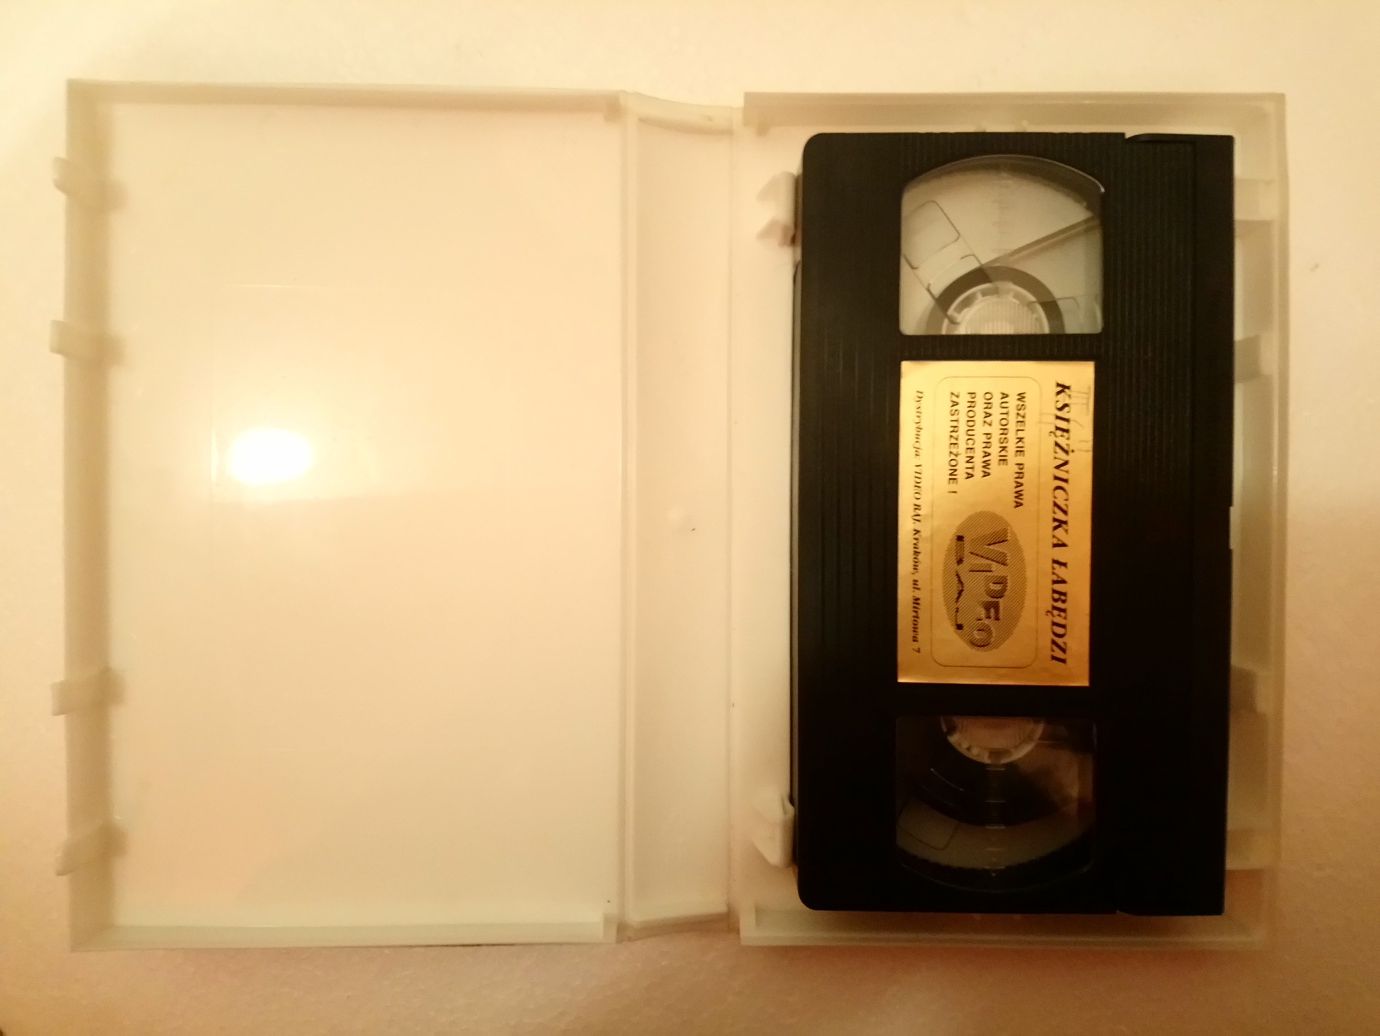 Kaseta VHS Księżniczka Łabędzi, bajka, 1994, 89 minut